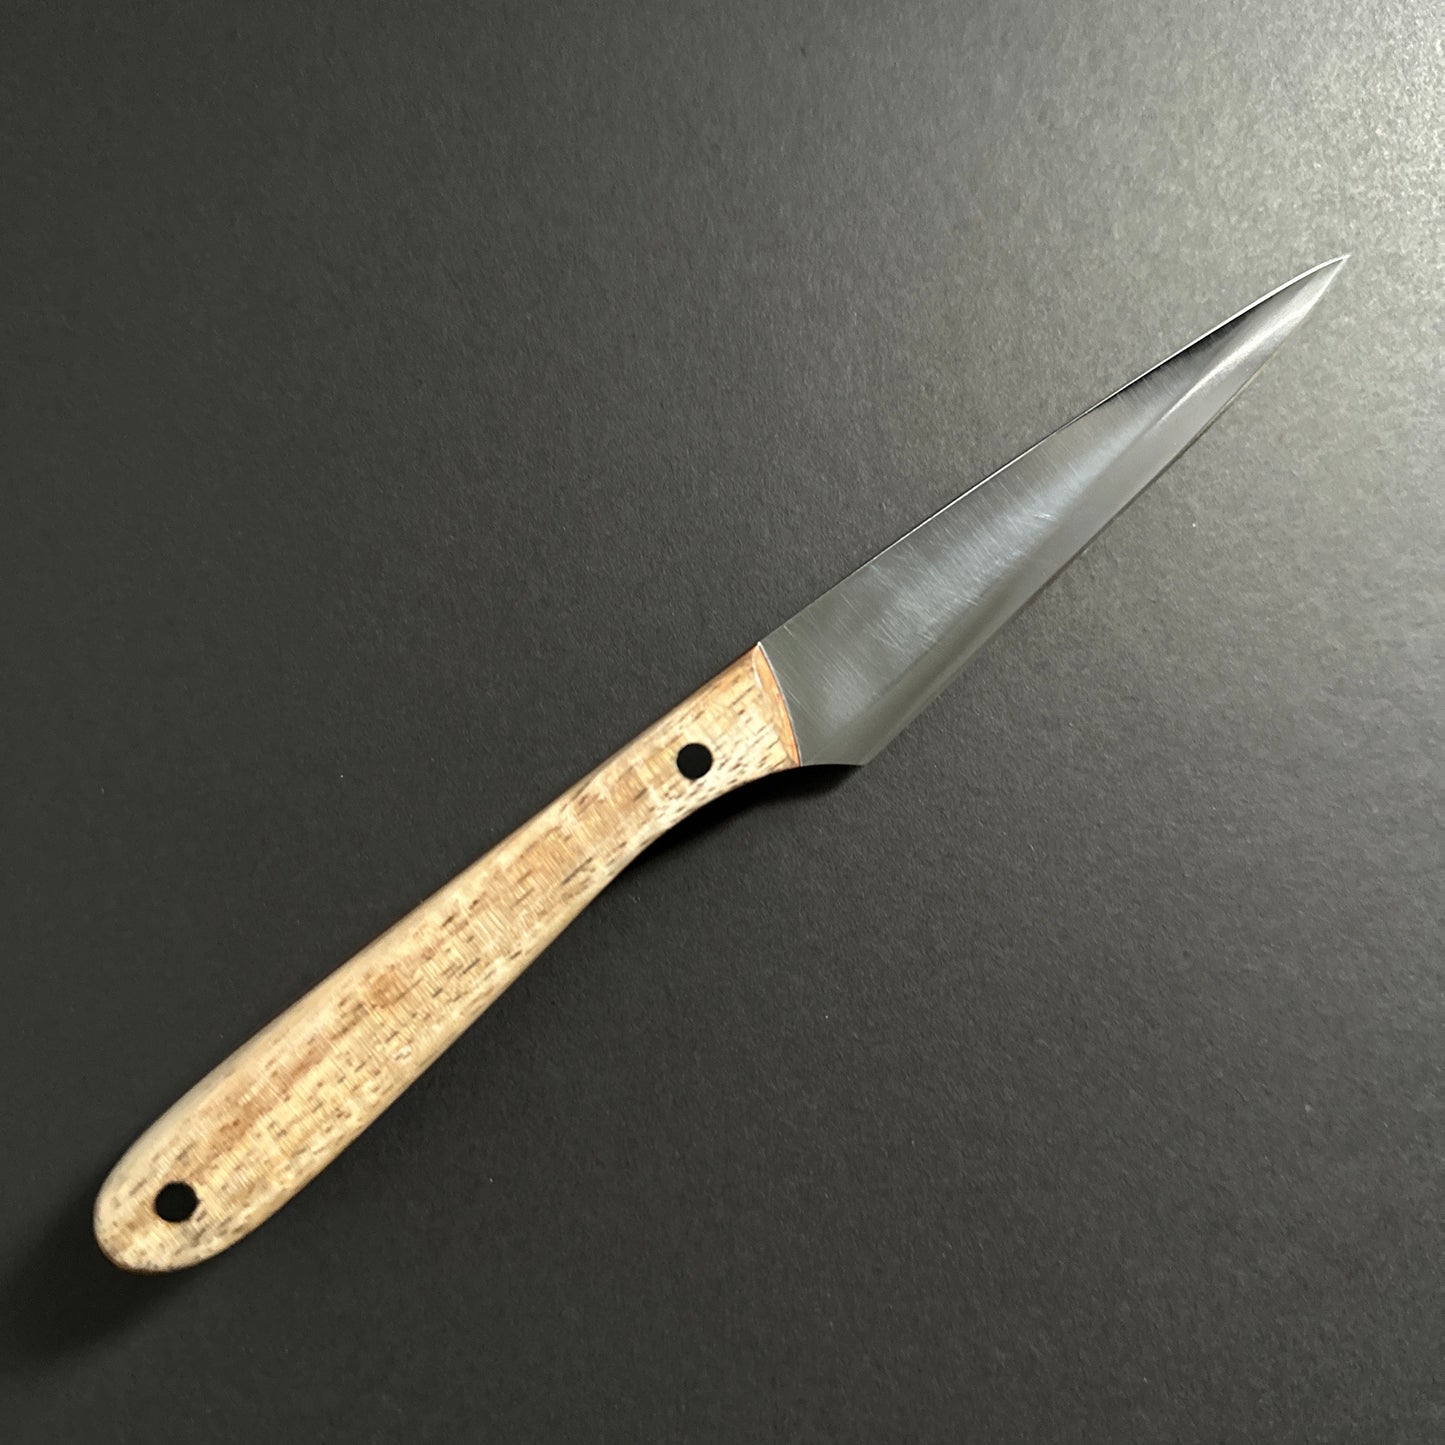 4" Bar / Paring Knife - No. 2197